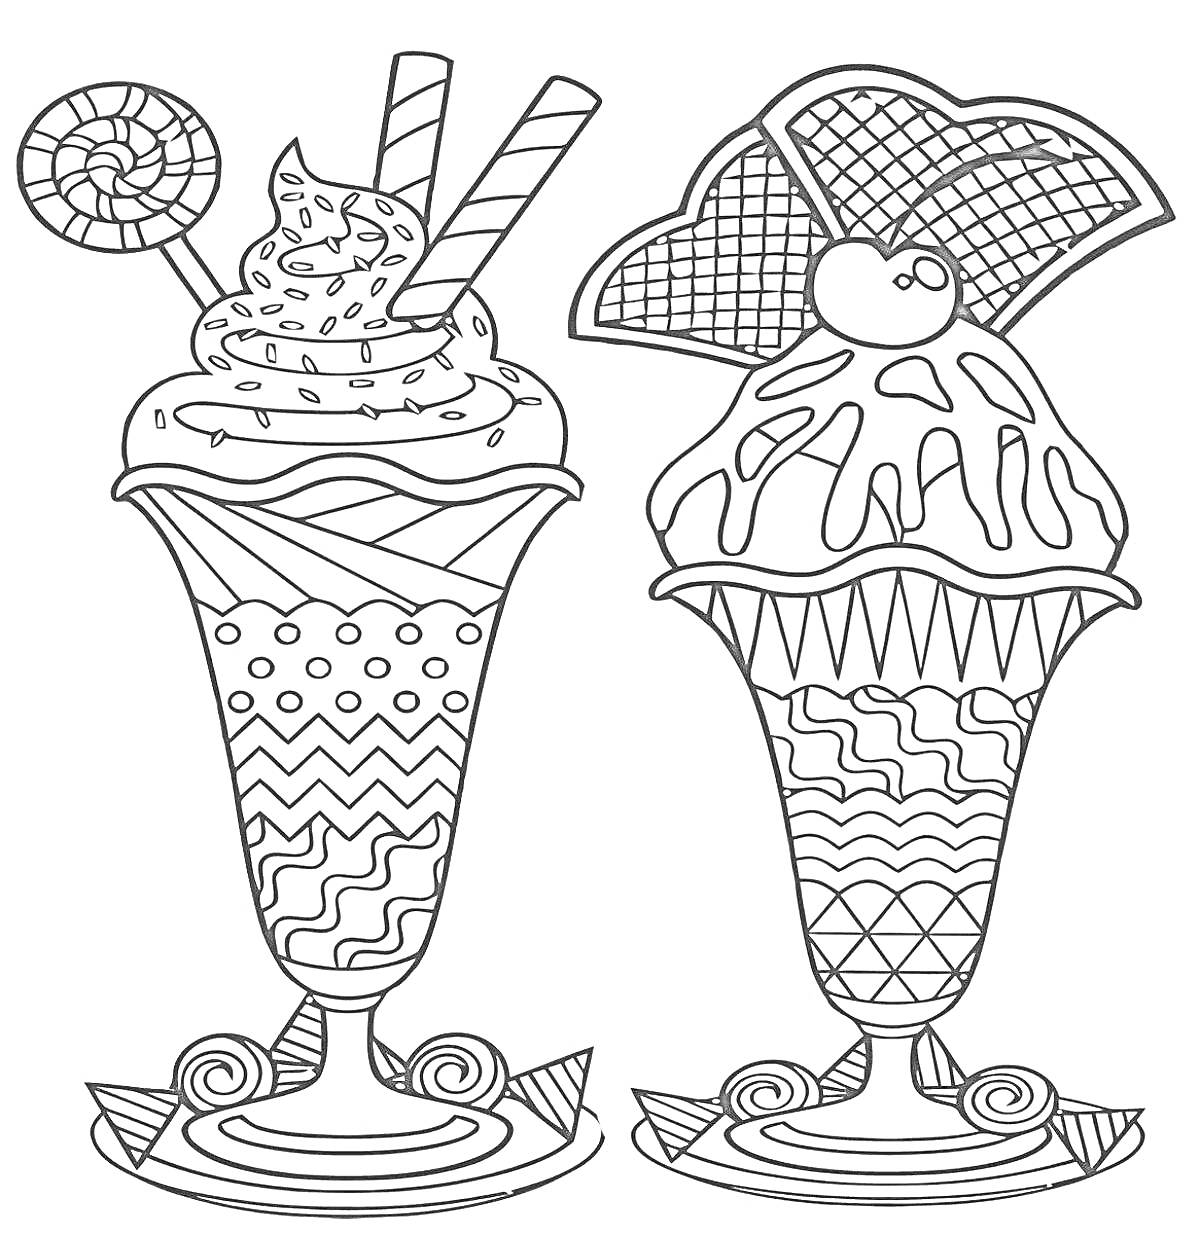 Раскраска Два десерта с мороженым, конфетами, трубочками, взбитыми сливками, вишней, вафельным декором